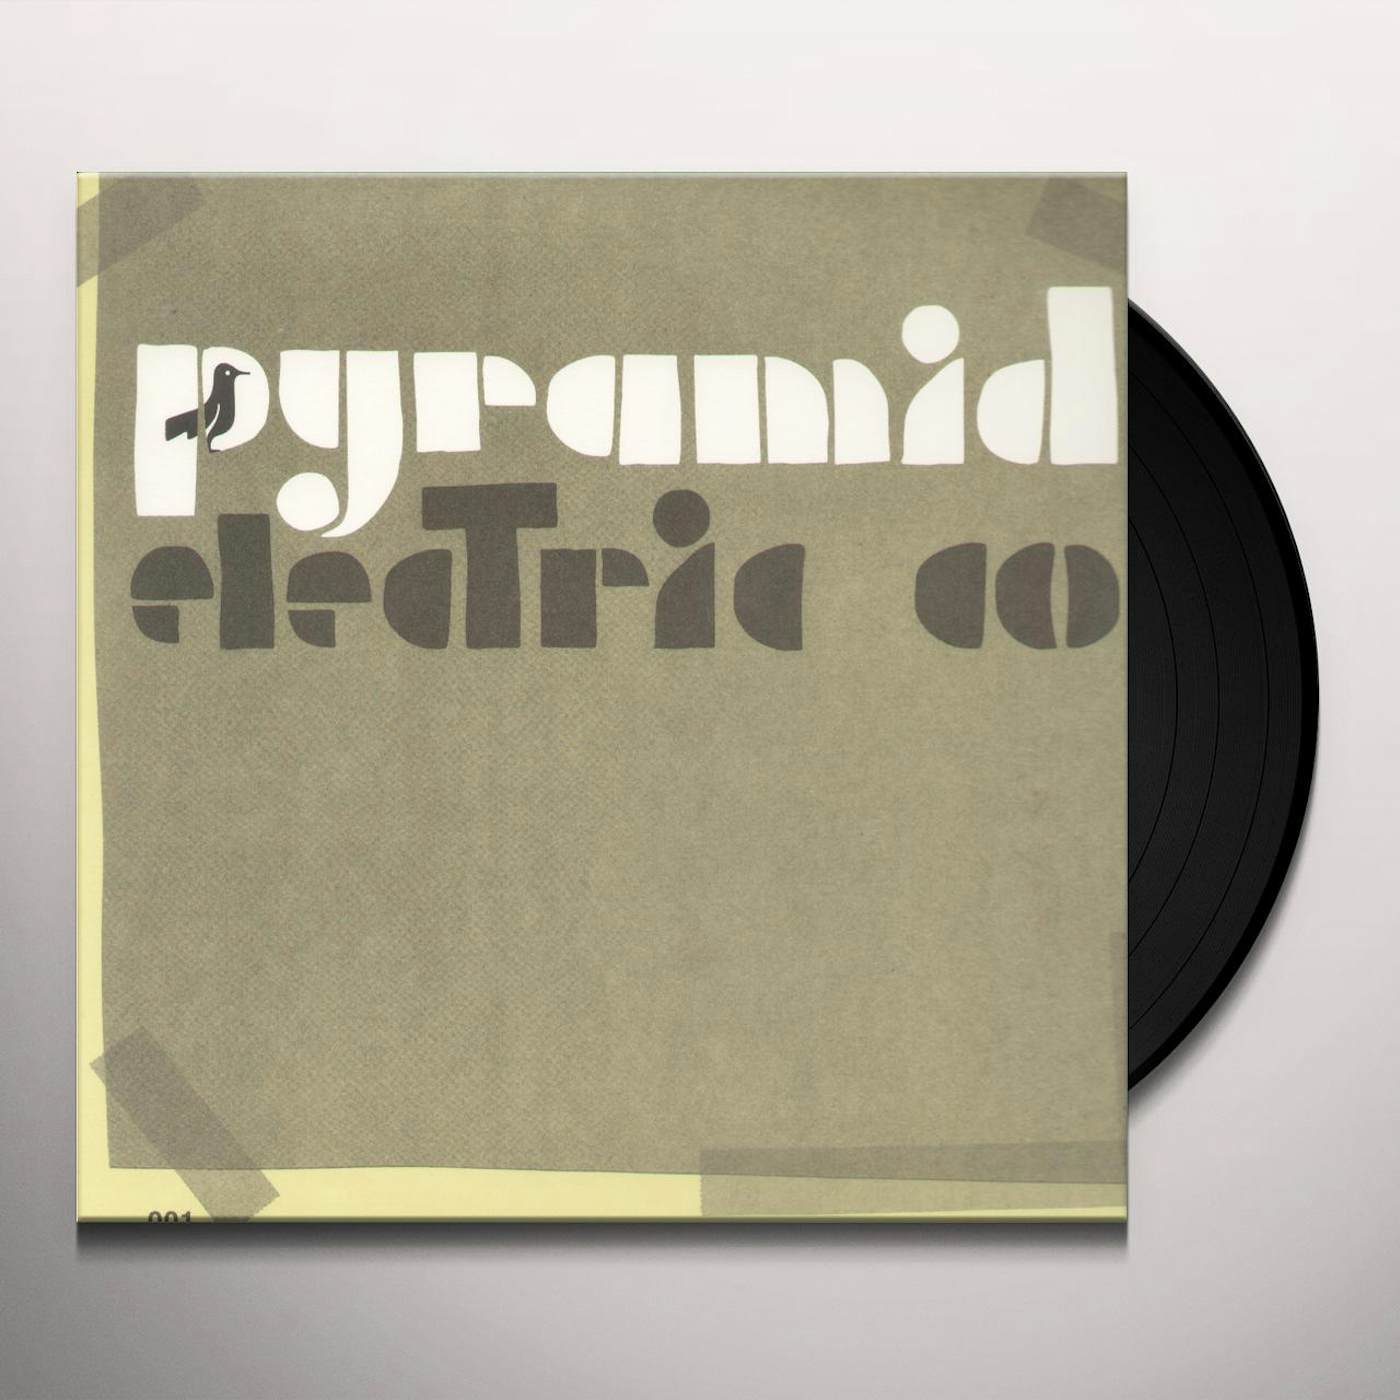 Jason Molina Pyramid Electric Co Vinyl Record